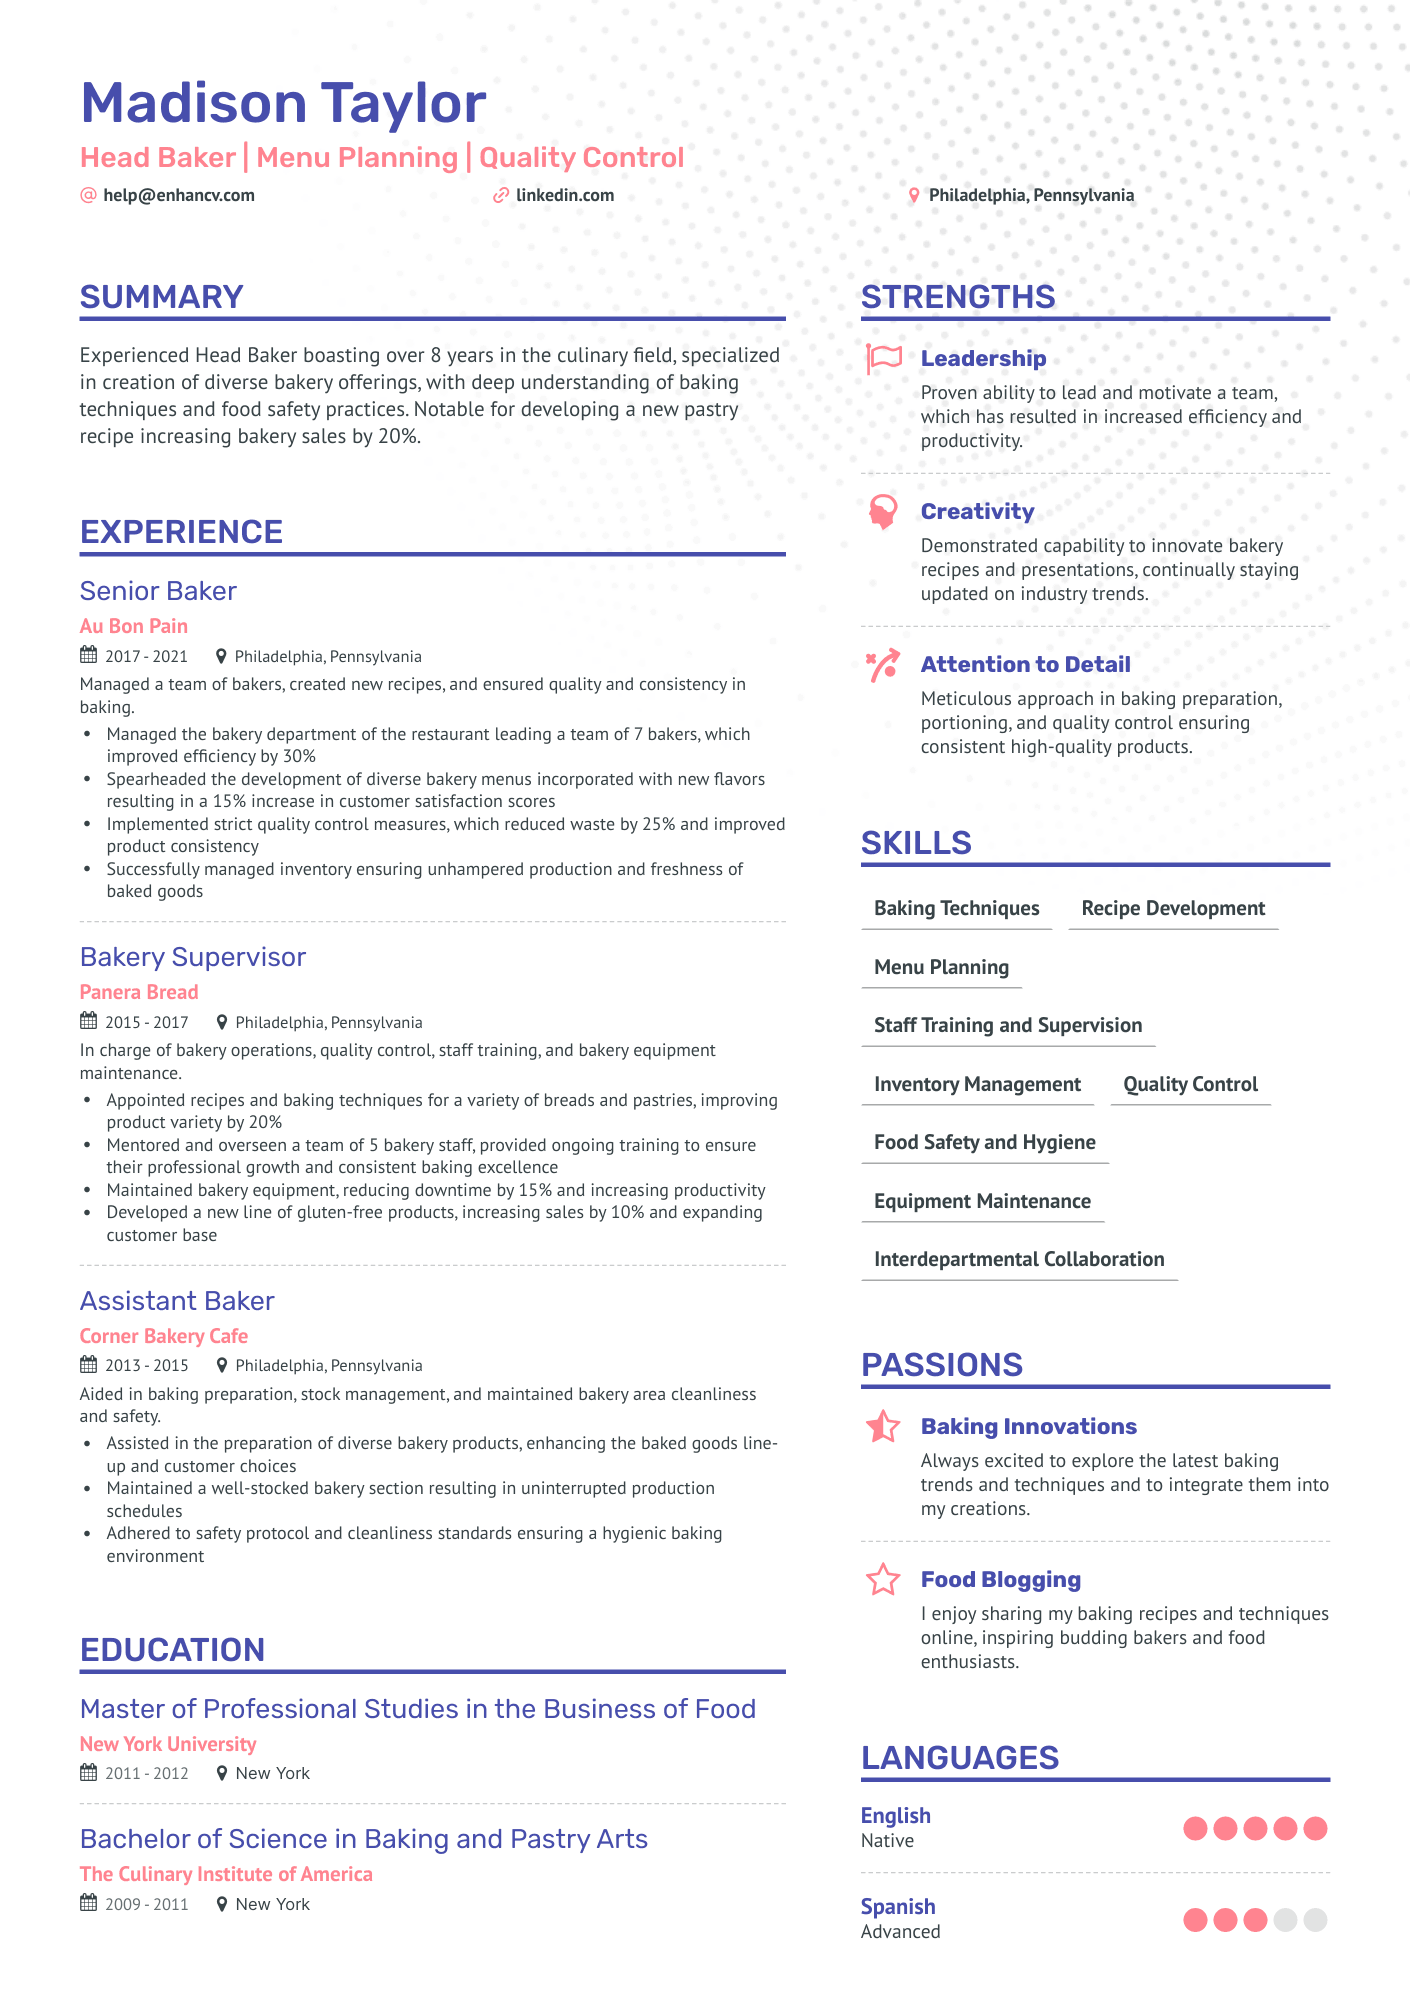 professional summary bakery resume